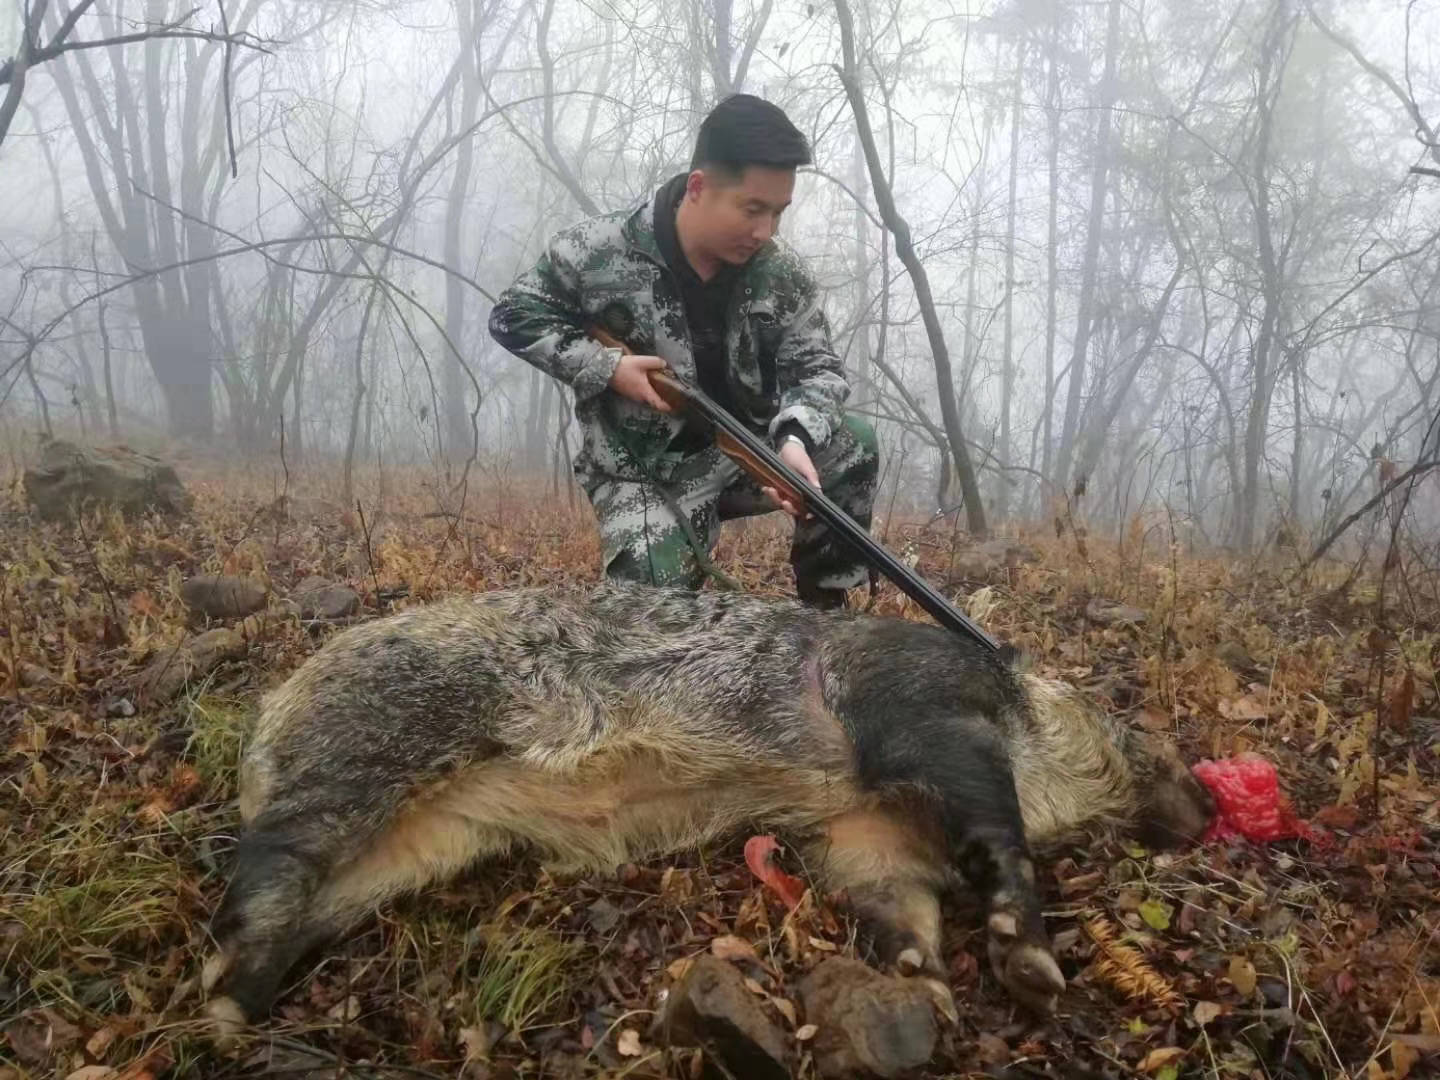 狩猎不是简单的拿起猎枪打死猎物,而是要明白狩猎作为一项世代传承的